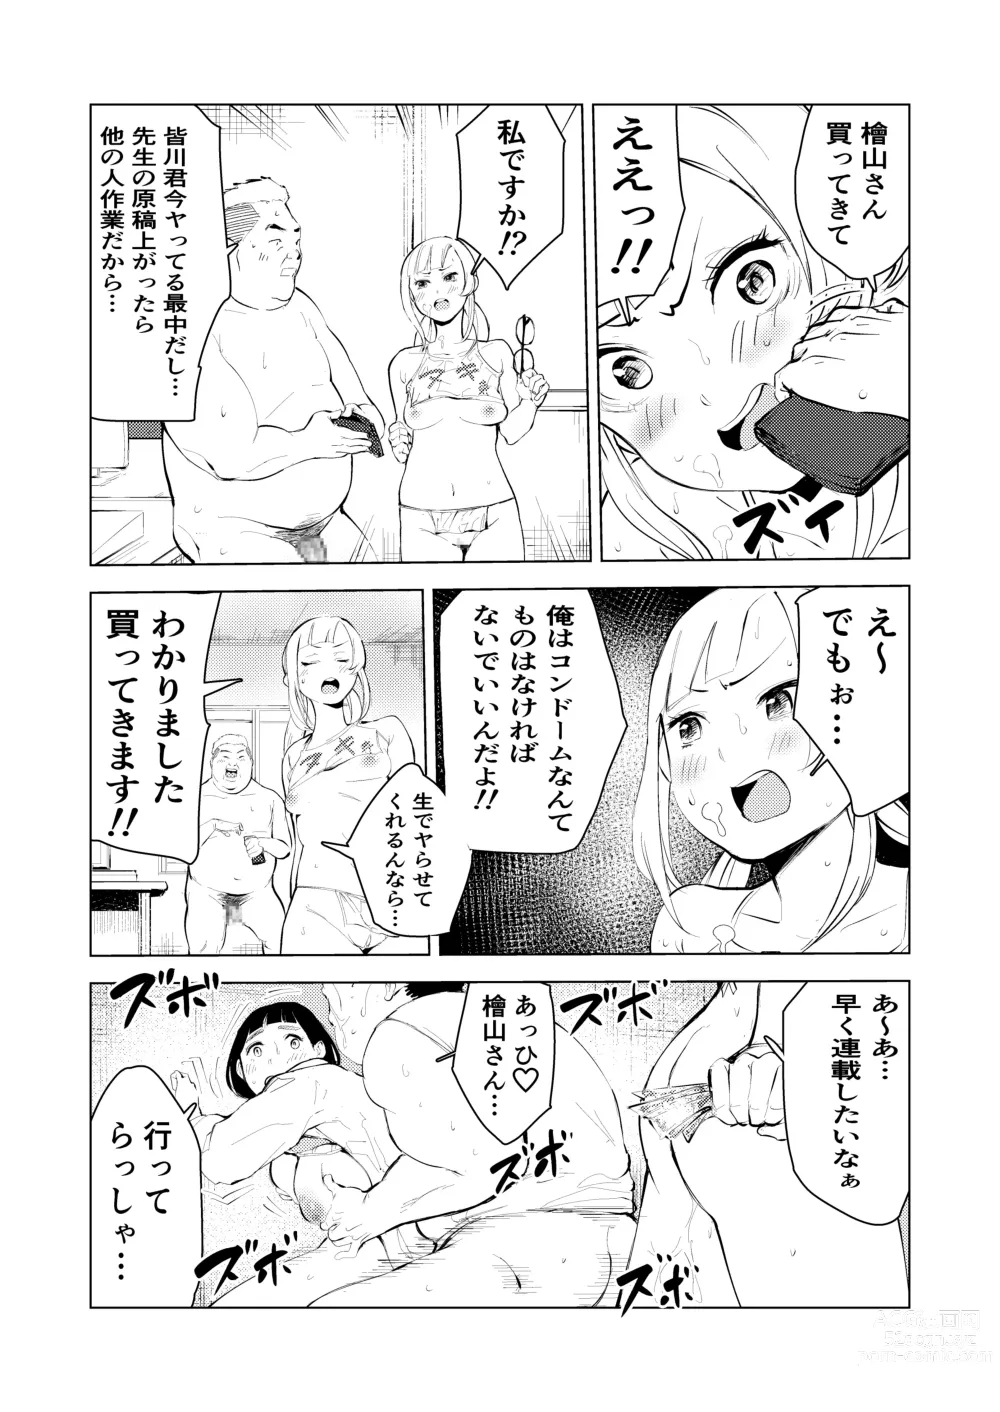 Page 17 of doujinshi Ashisutanto no oshigoto